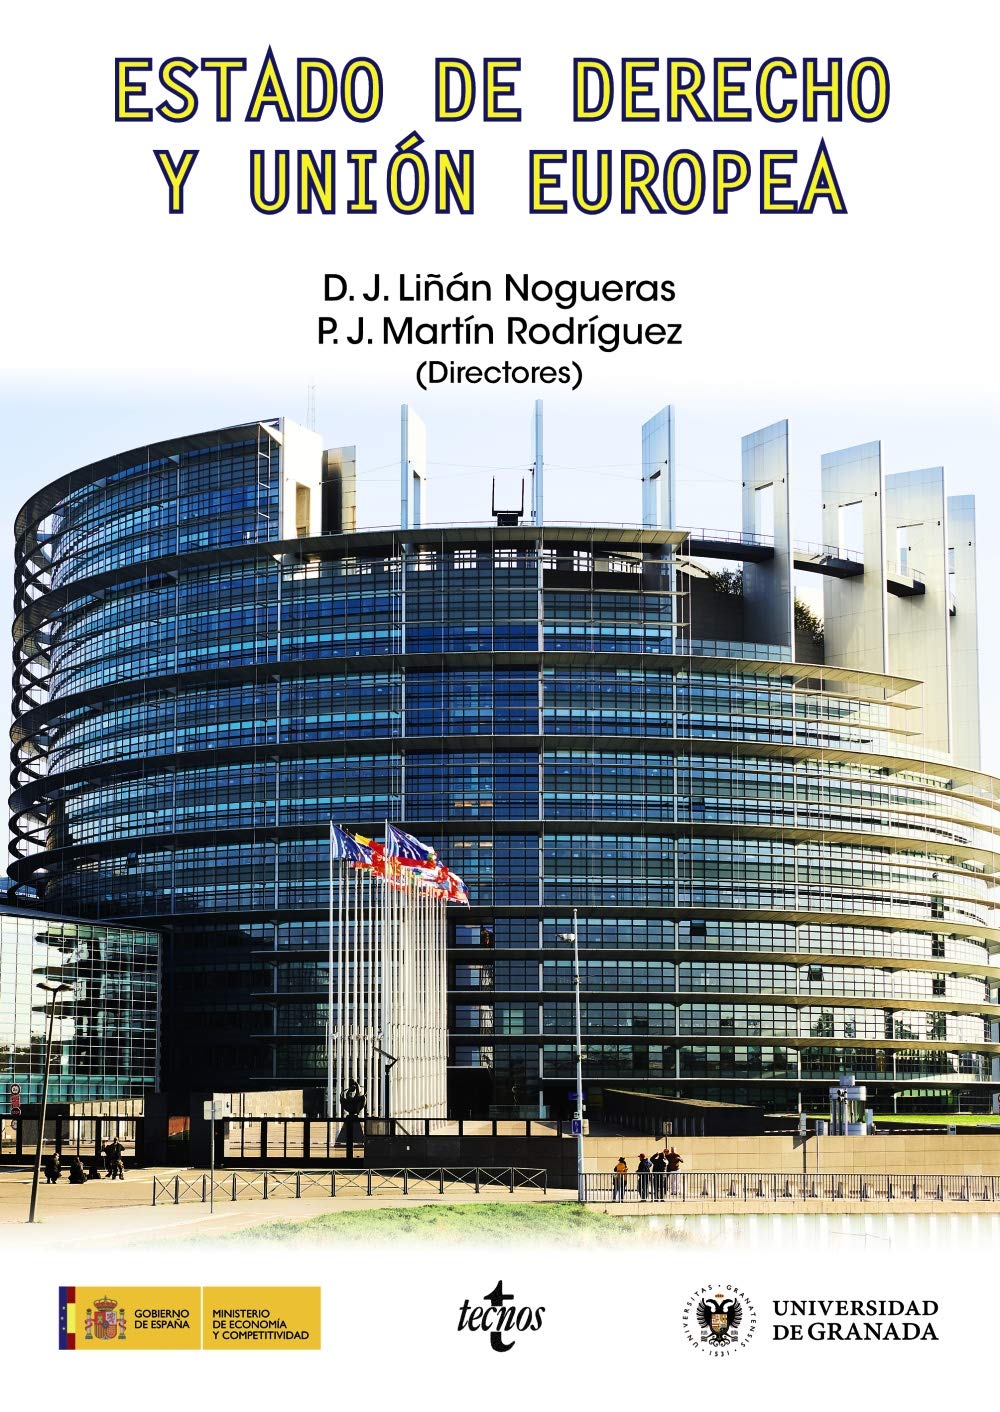 Imagen de portada del libro Estado de derecho y Unión Europea